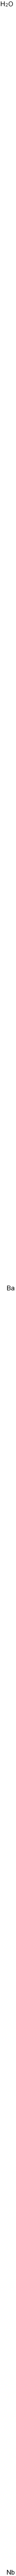 ニオブ酸バリウム 化学構造式